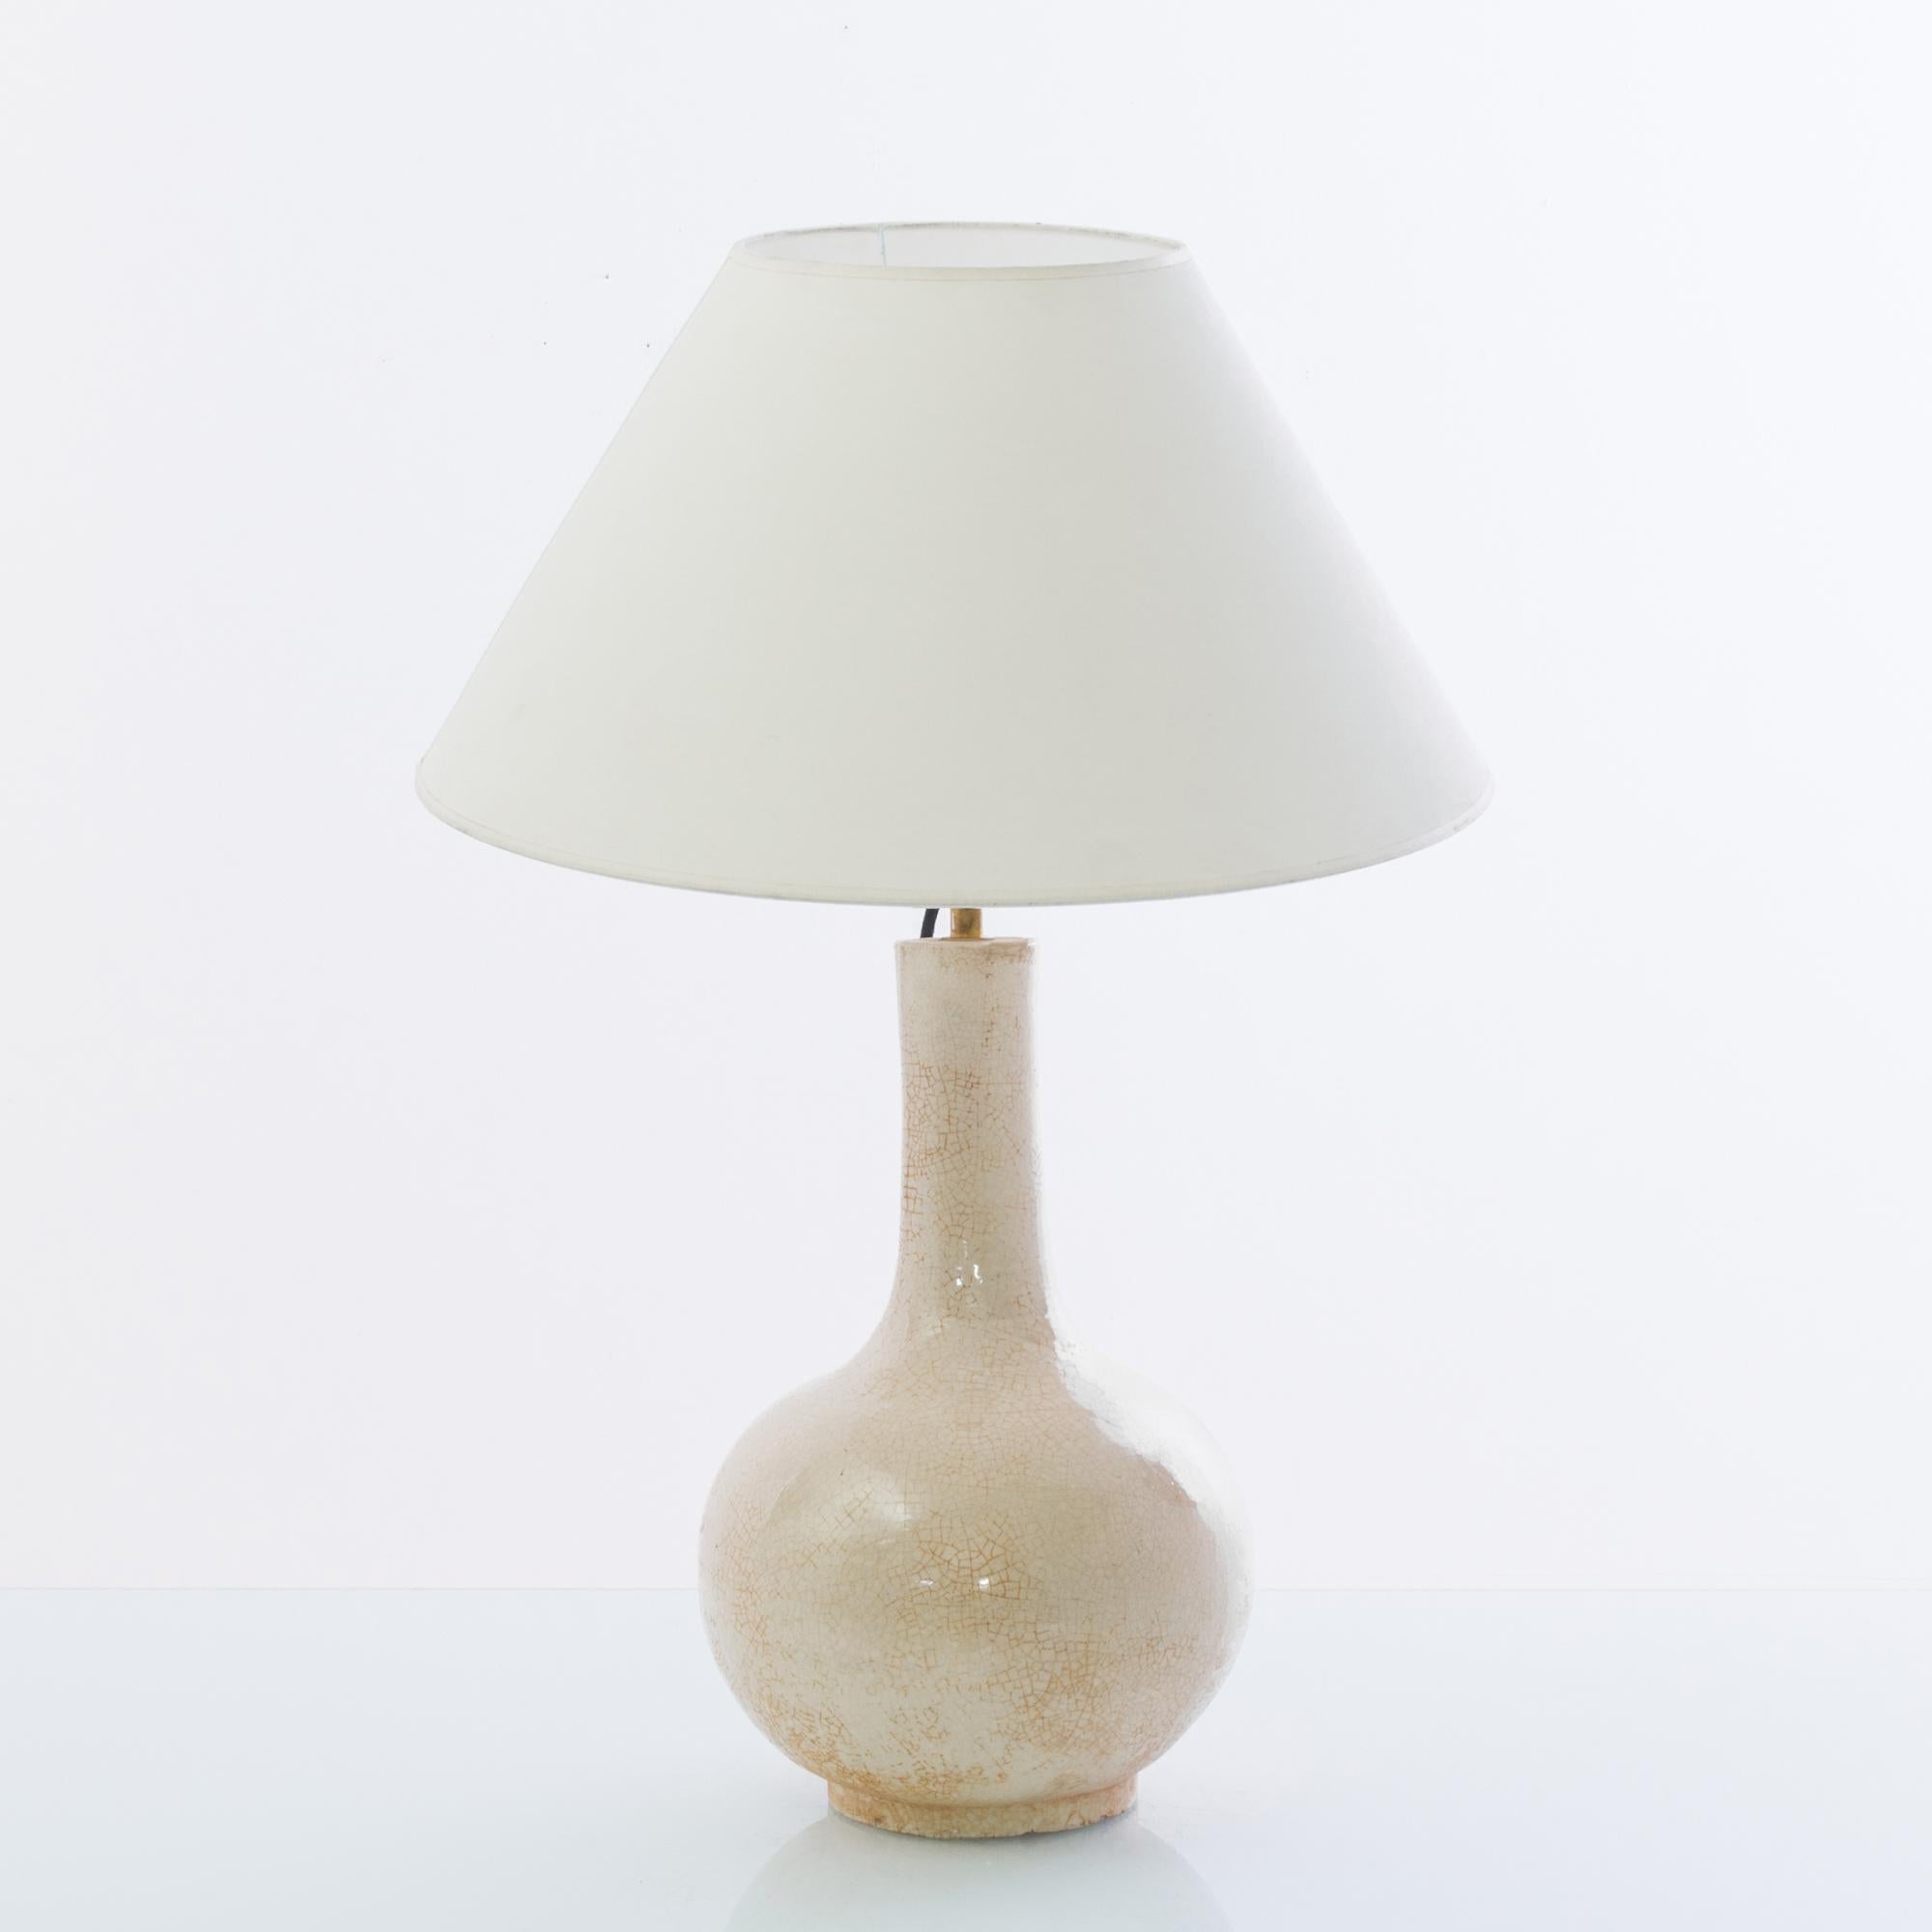 Contemporary Antique Chinese Crackled Cream Ceramic Vase Table Lamp